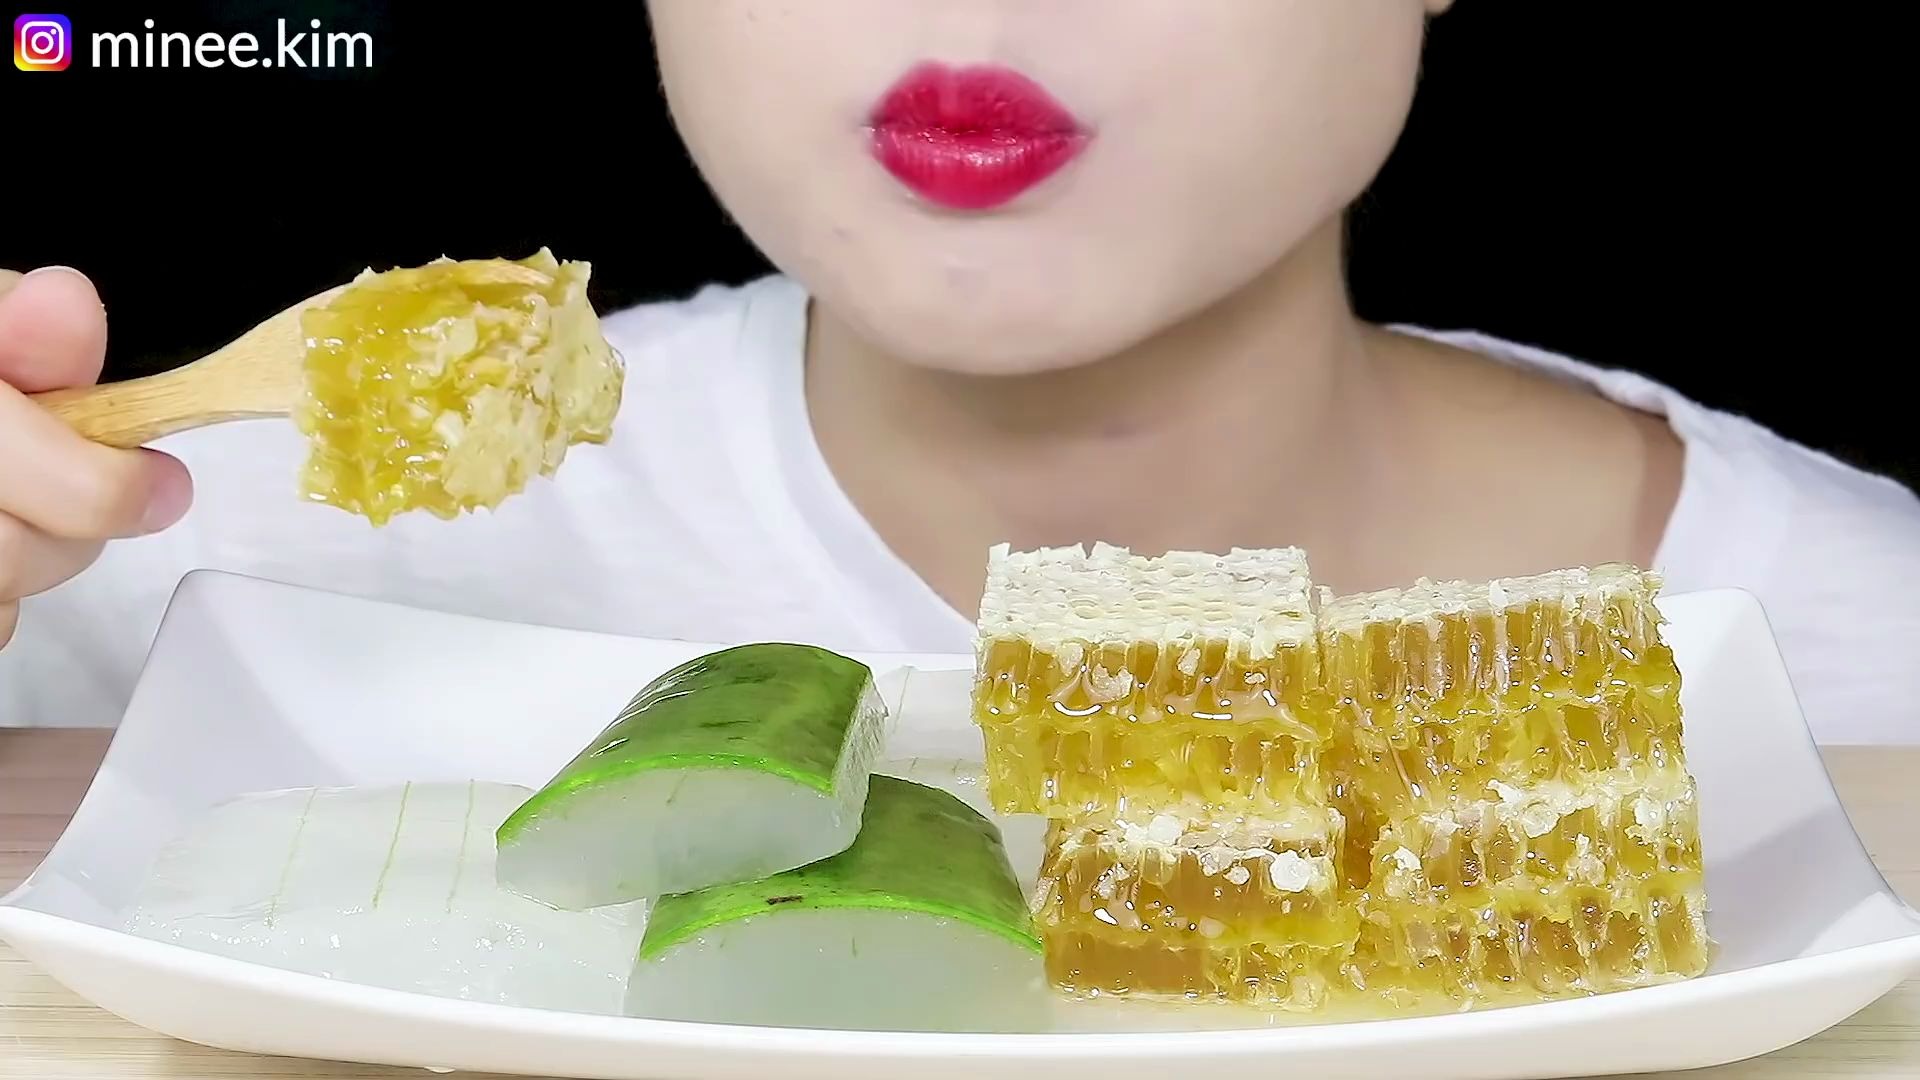 【大吃一斤 - MINEE EATS】 - 芦荟糕 蜂巢糕